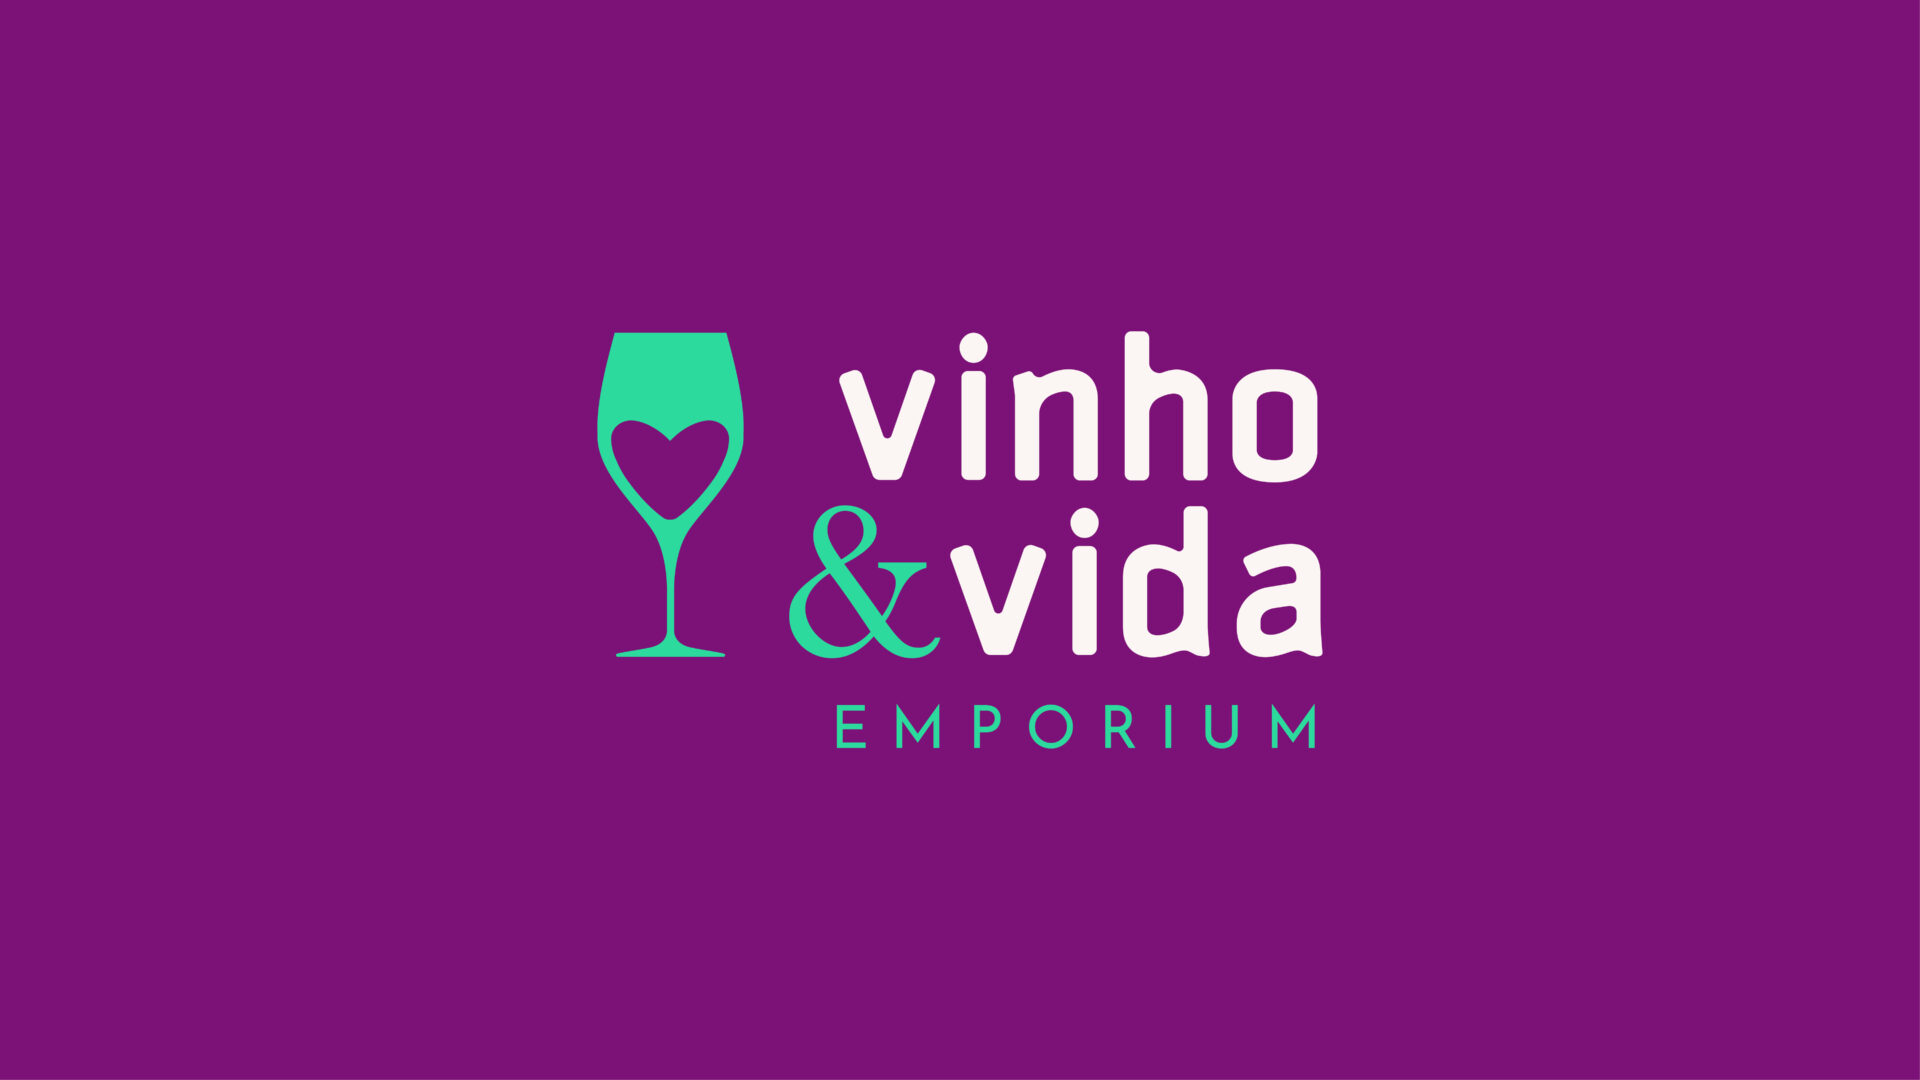 Vinho & Vida Emporium